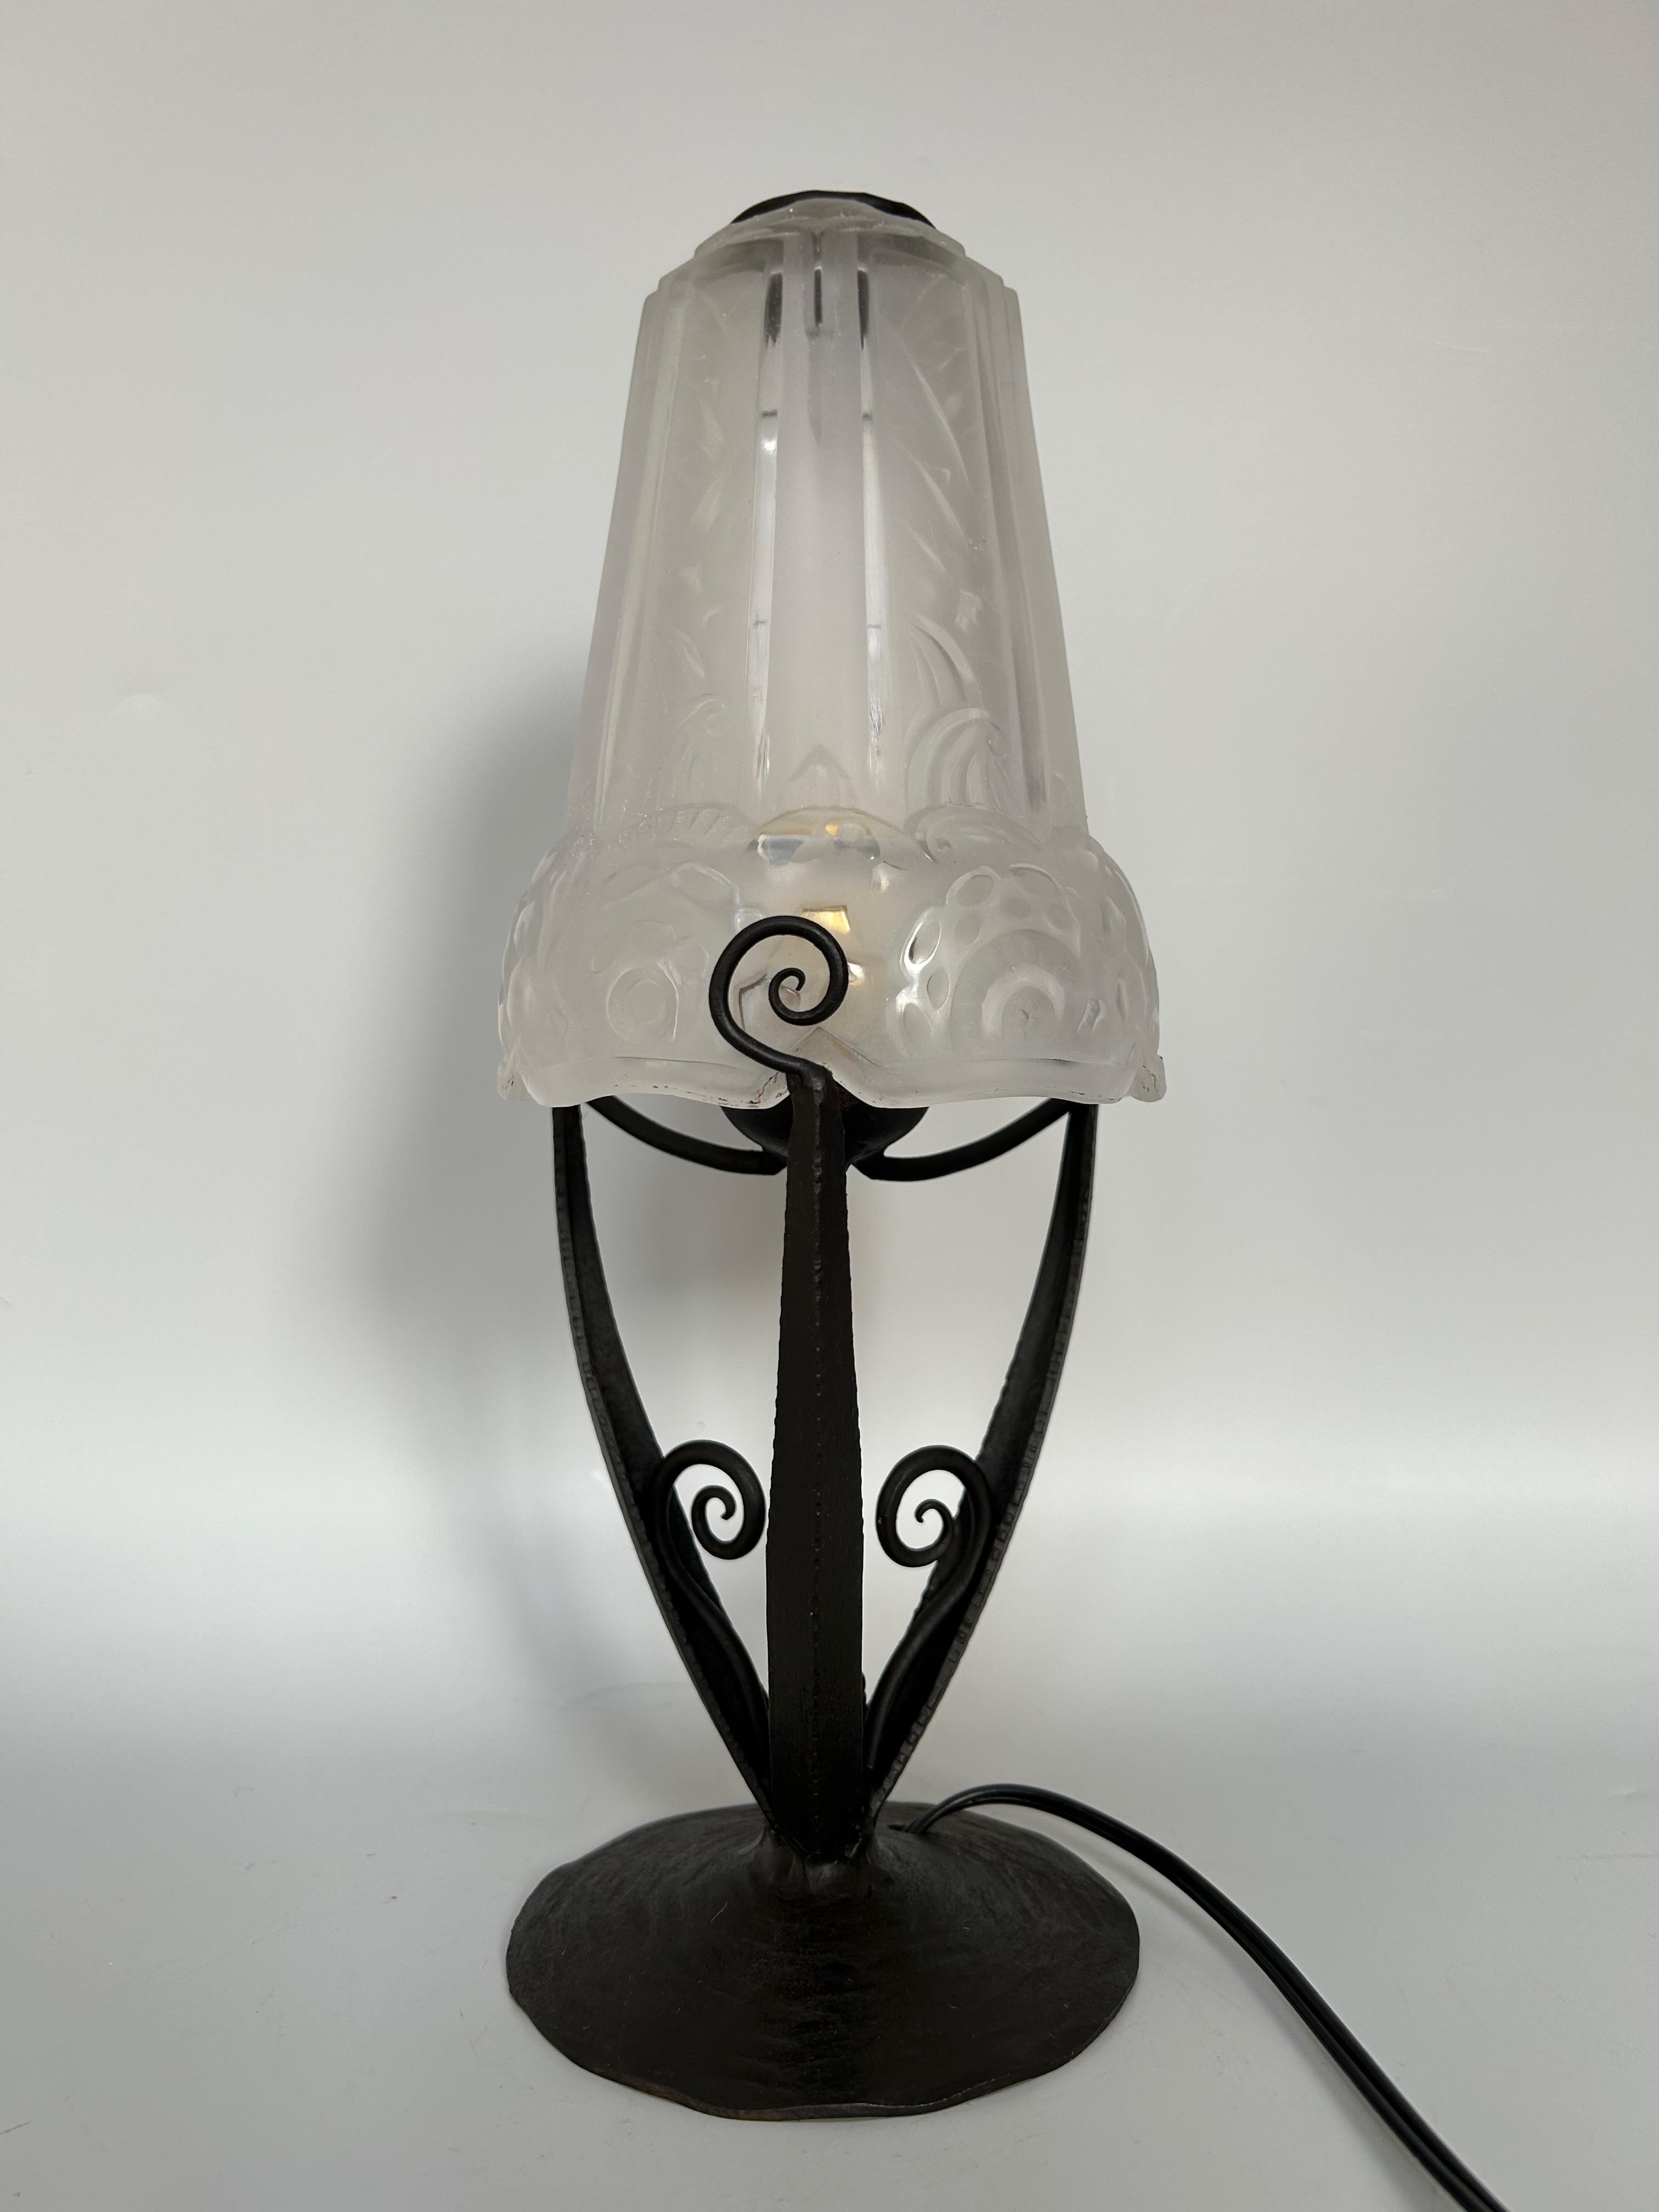 Art-déco-Lampe, um 1930.
Sockel aus Schmiedeeisen und Tulpe aus geformtem Glas mit geometrischem und floralem Dekor.
Elektrifiziert und in perfektem Zustand.

Durchmesser: 10,5 cm
Höhe: 29 cm
Gewicht: 1 kg

Jean Pierre Léon MAYNADIER (1888 - 1948)